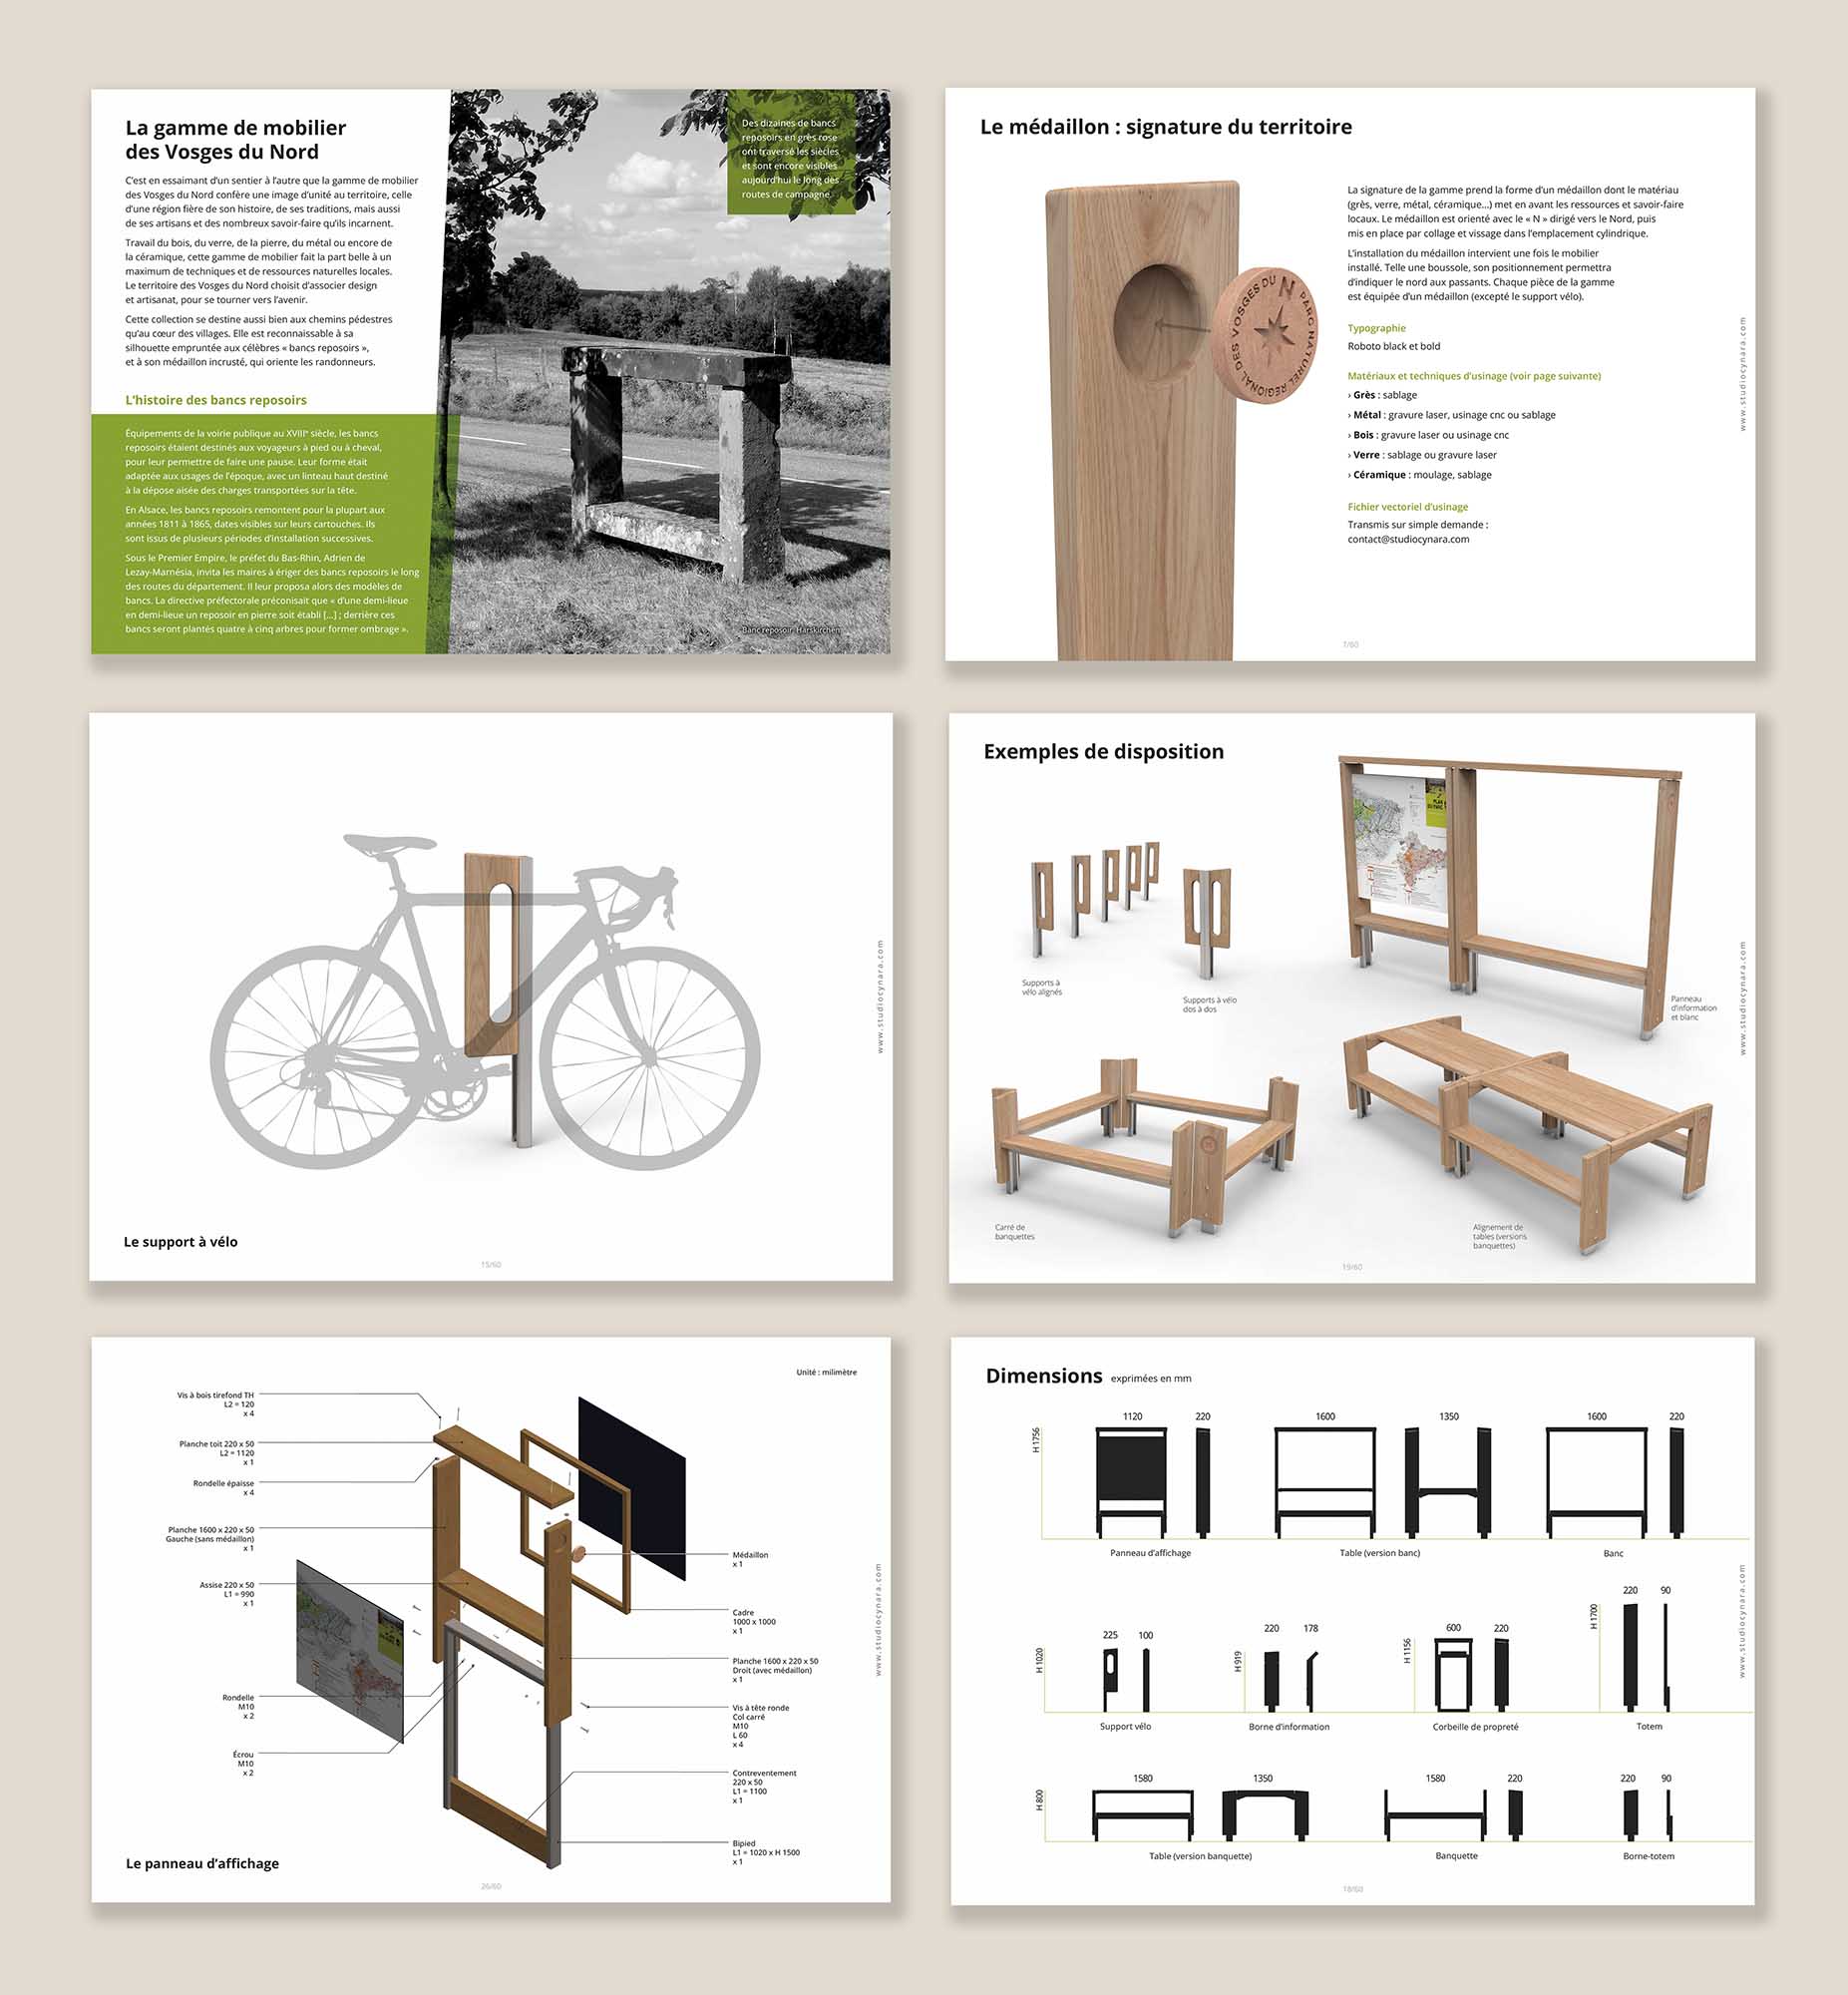 Aperçu de quelques pages du catalogue de mobilier, avec les bancs reposoirs, des simulations 3D, des plans et dimensions